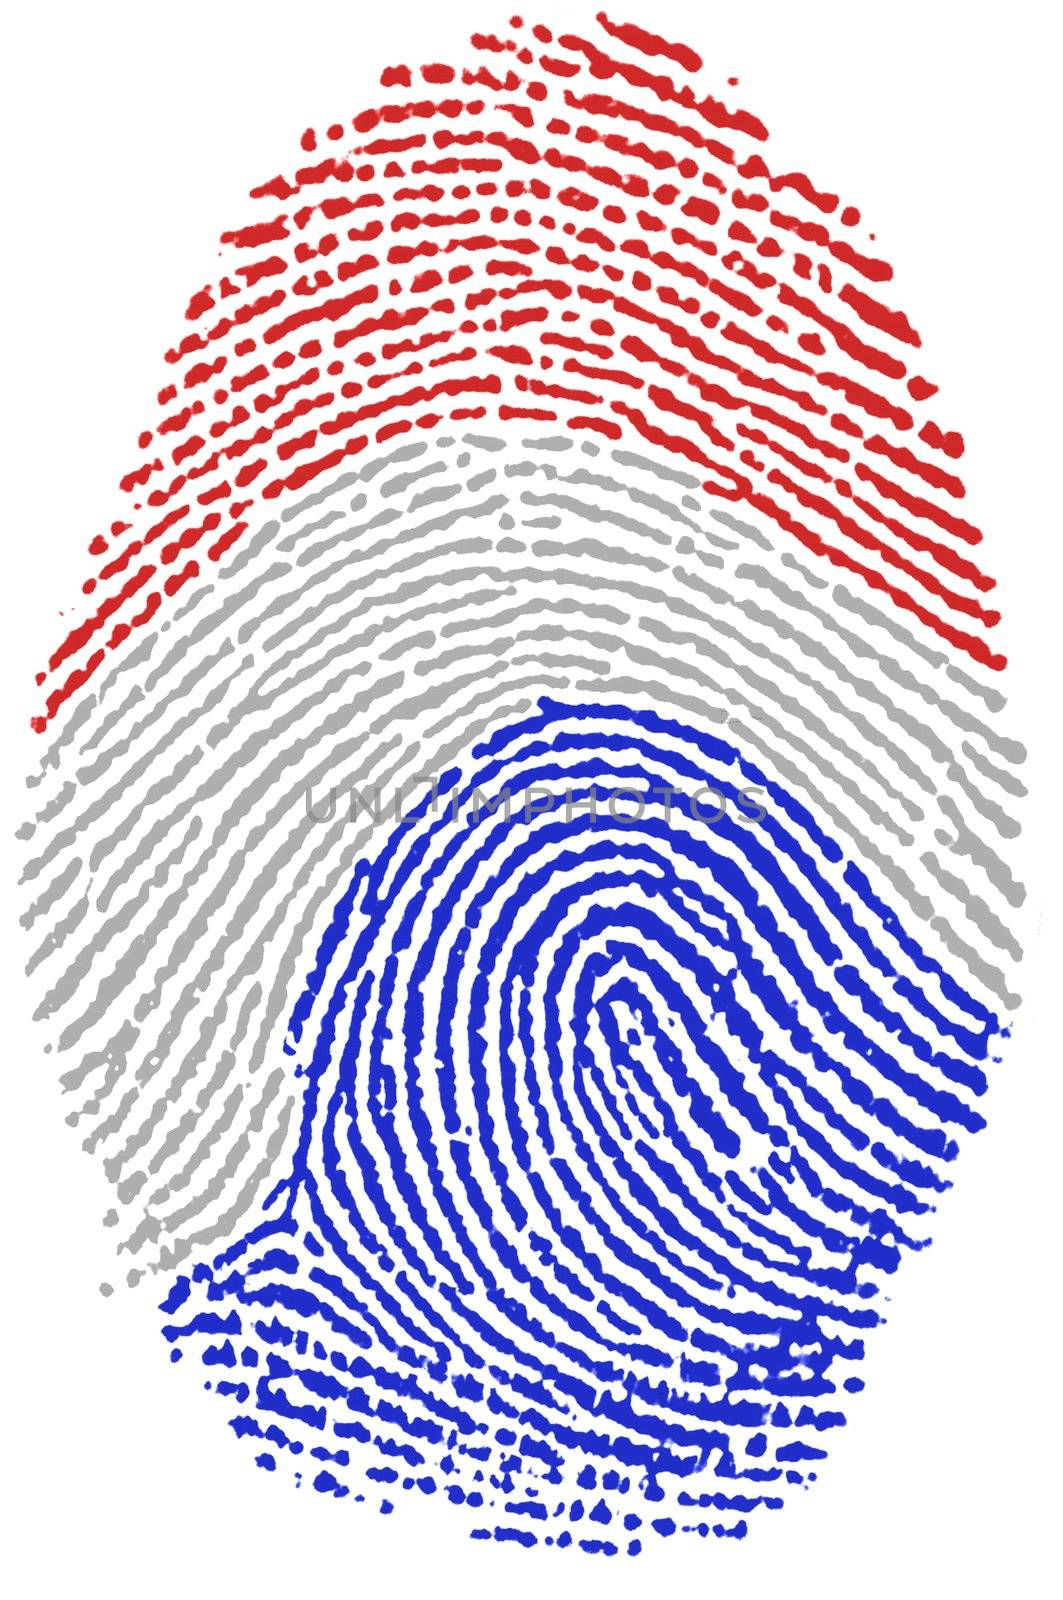 My Fingerprint for dutch passport